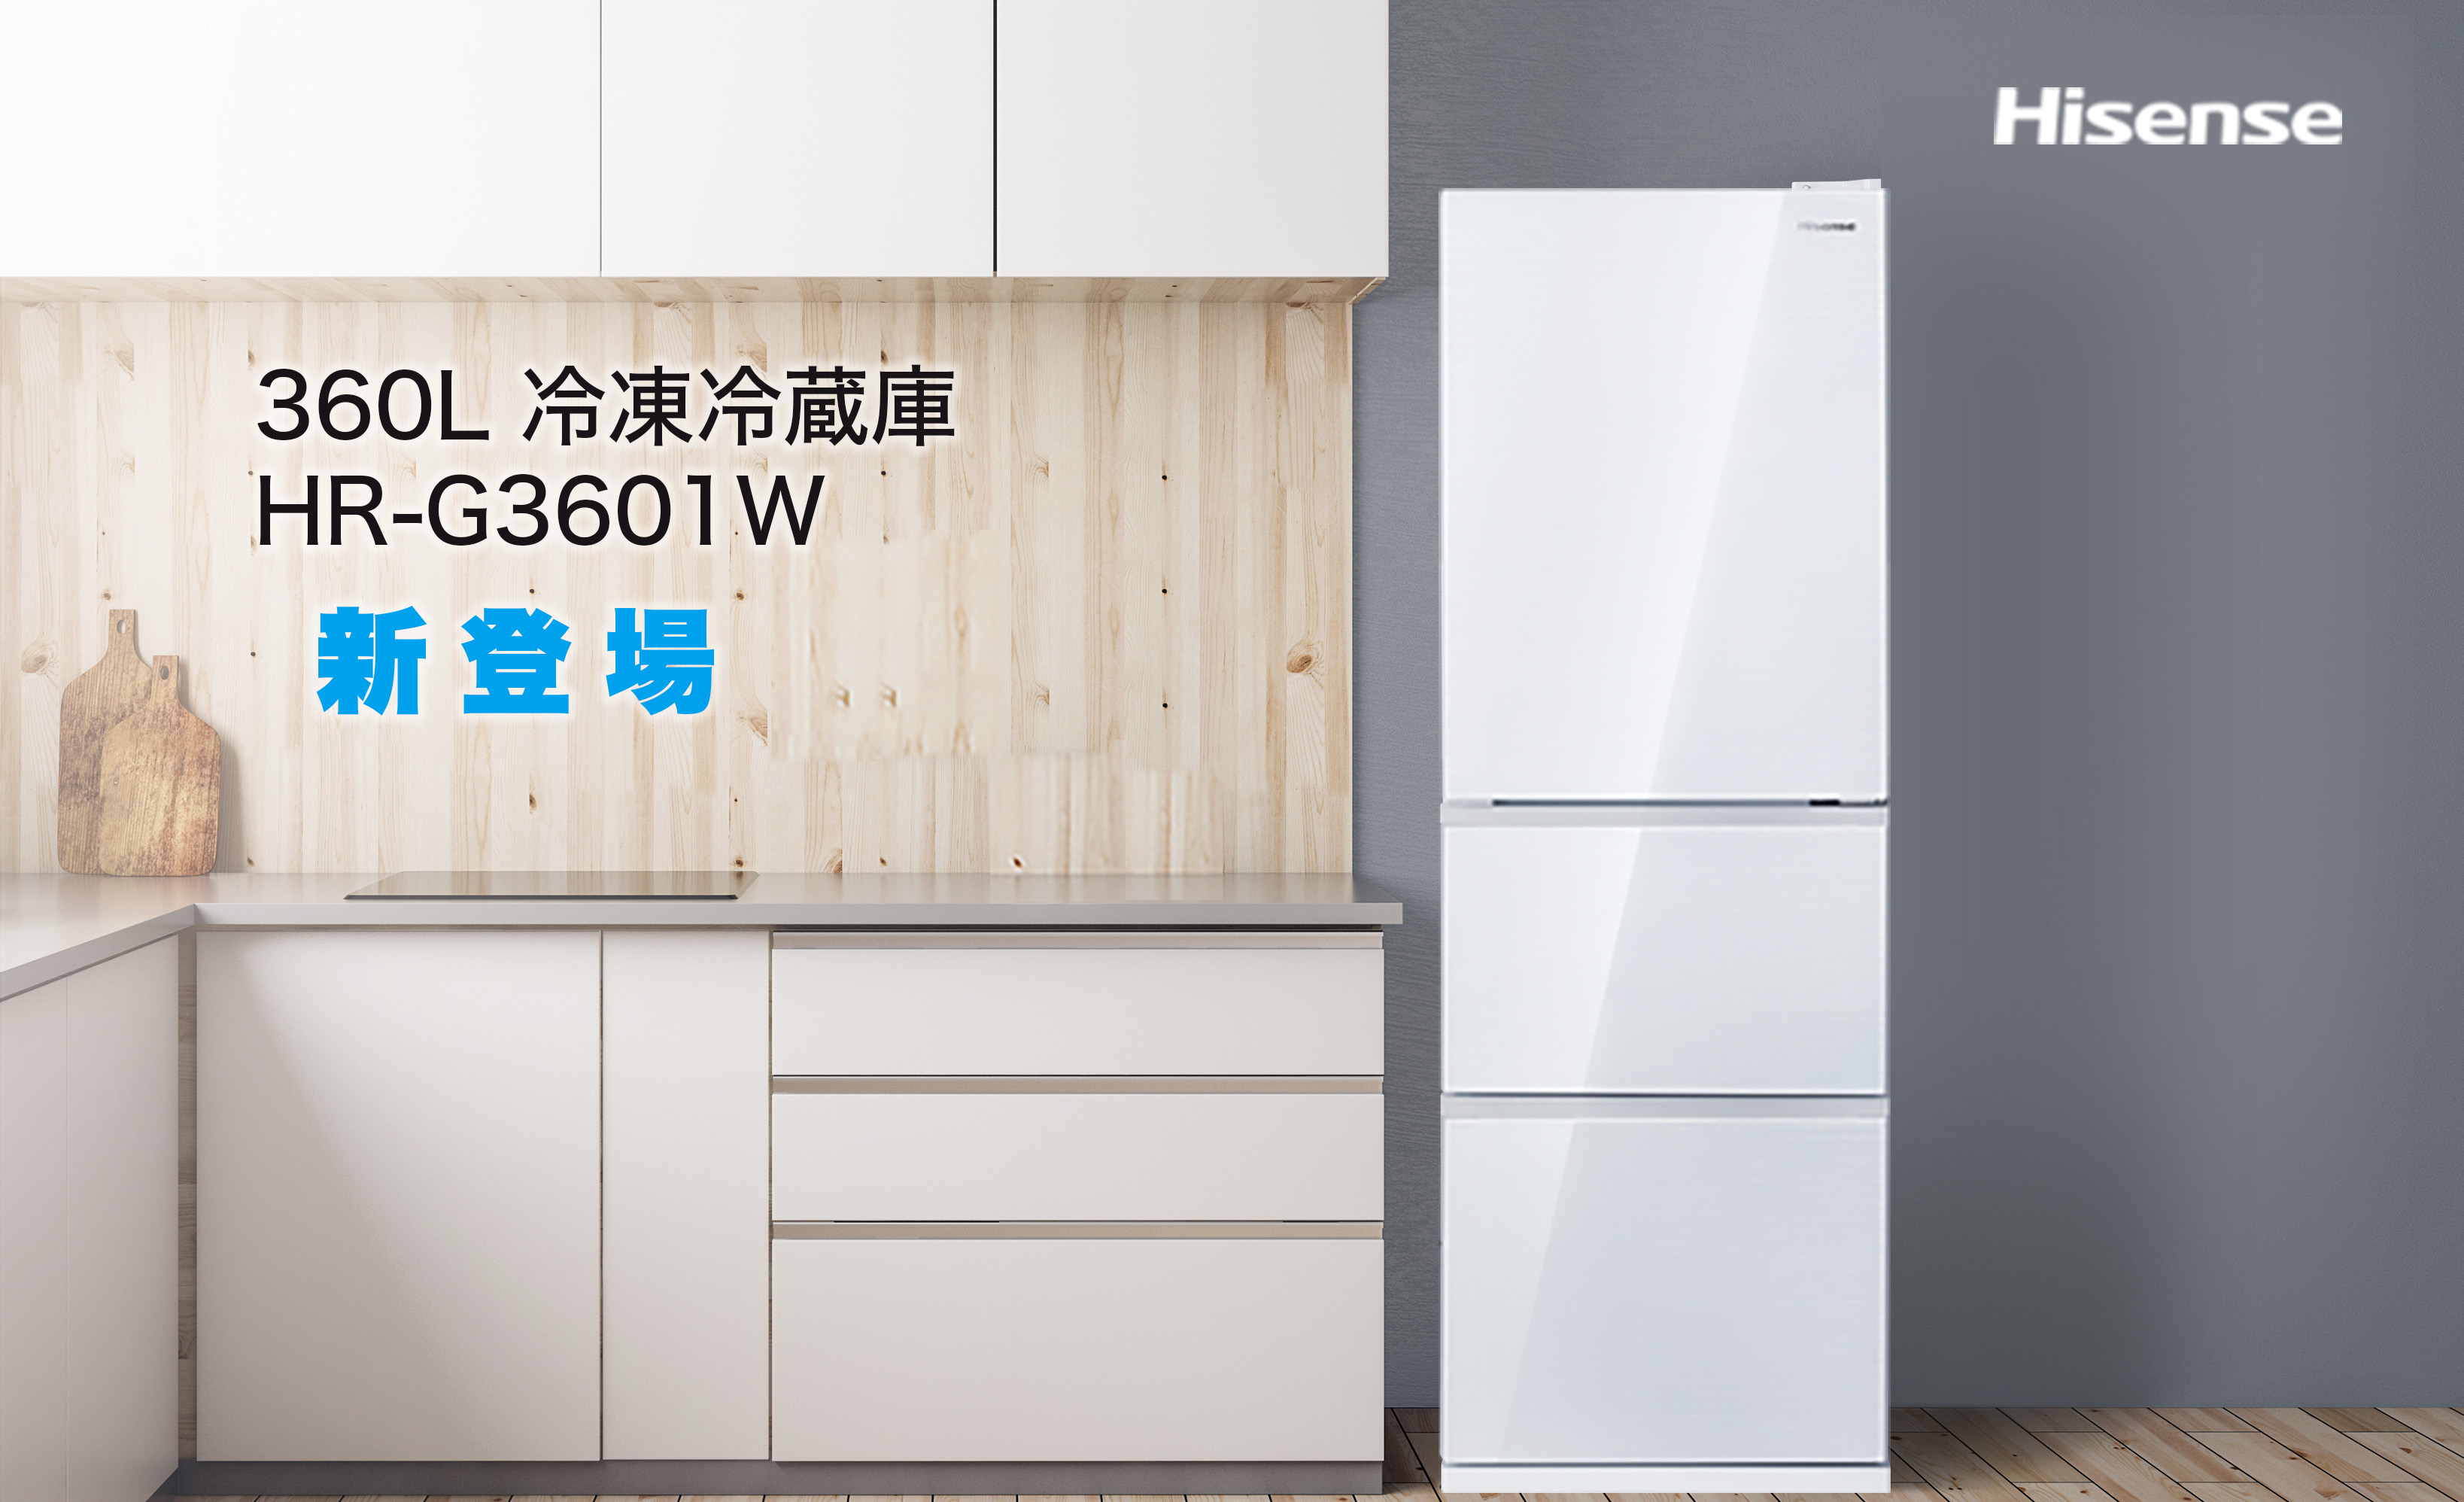 ハイセンスジャパン、便利な自動製氷システム搭載の 360L冷蔵庫「HR